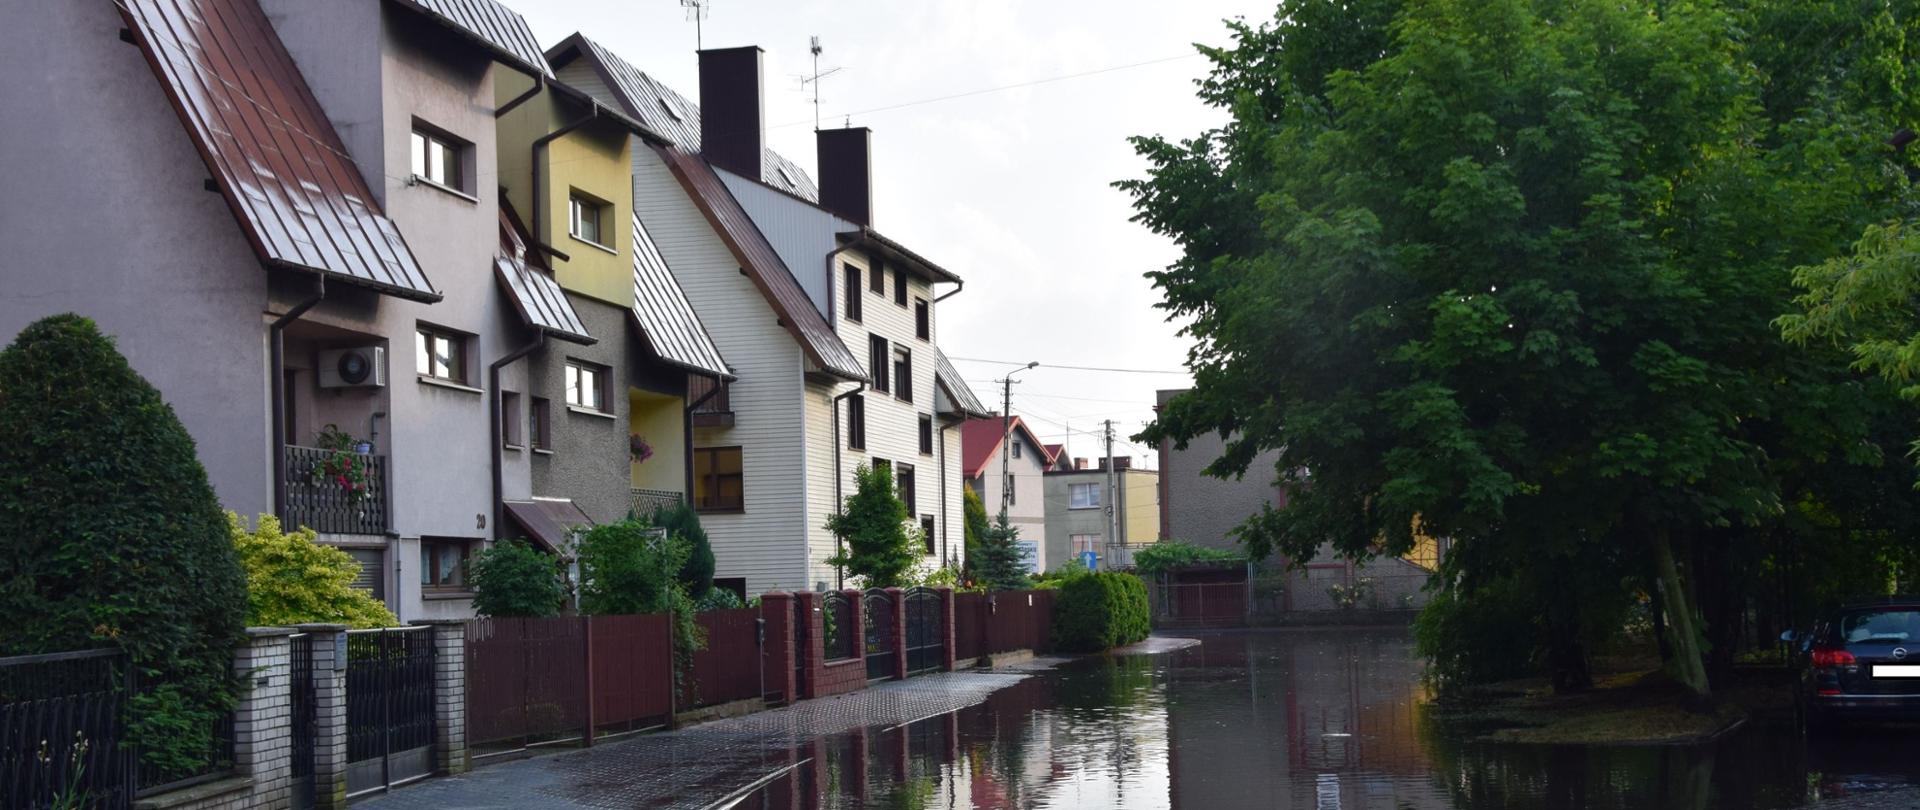 Zdjęcie przedstawia zalaną drogę na osiedlu, widoczna woda na całej szerokości jezdni oraz domy mieszkalne 